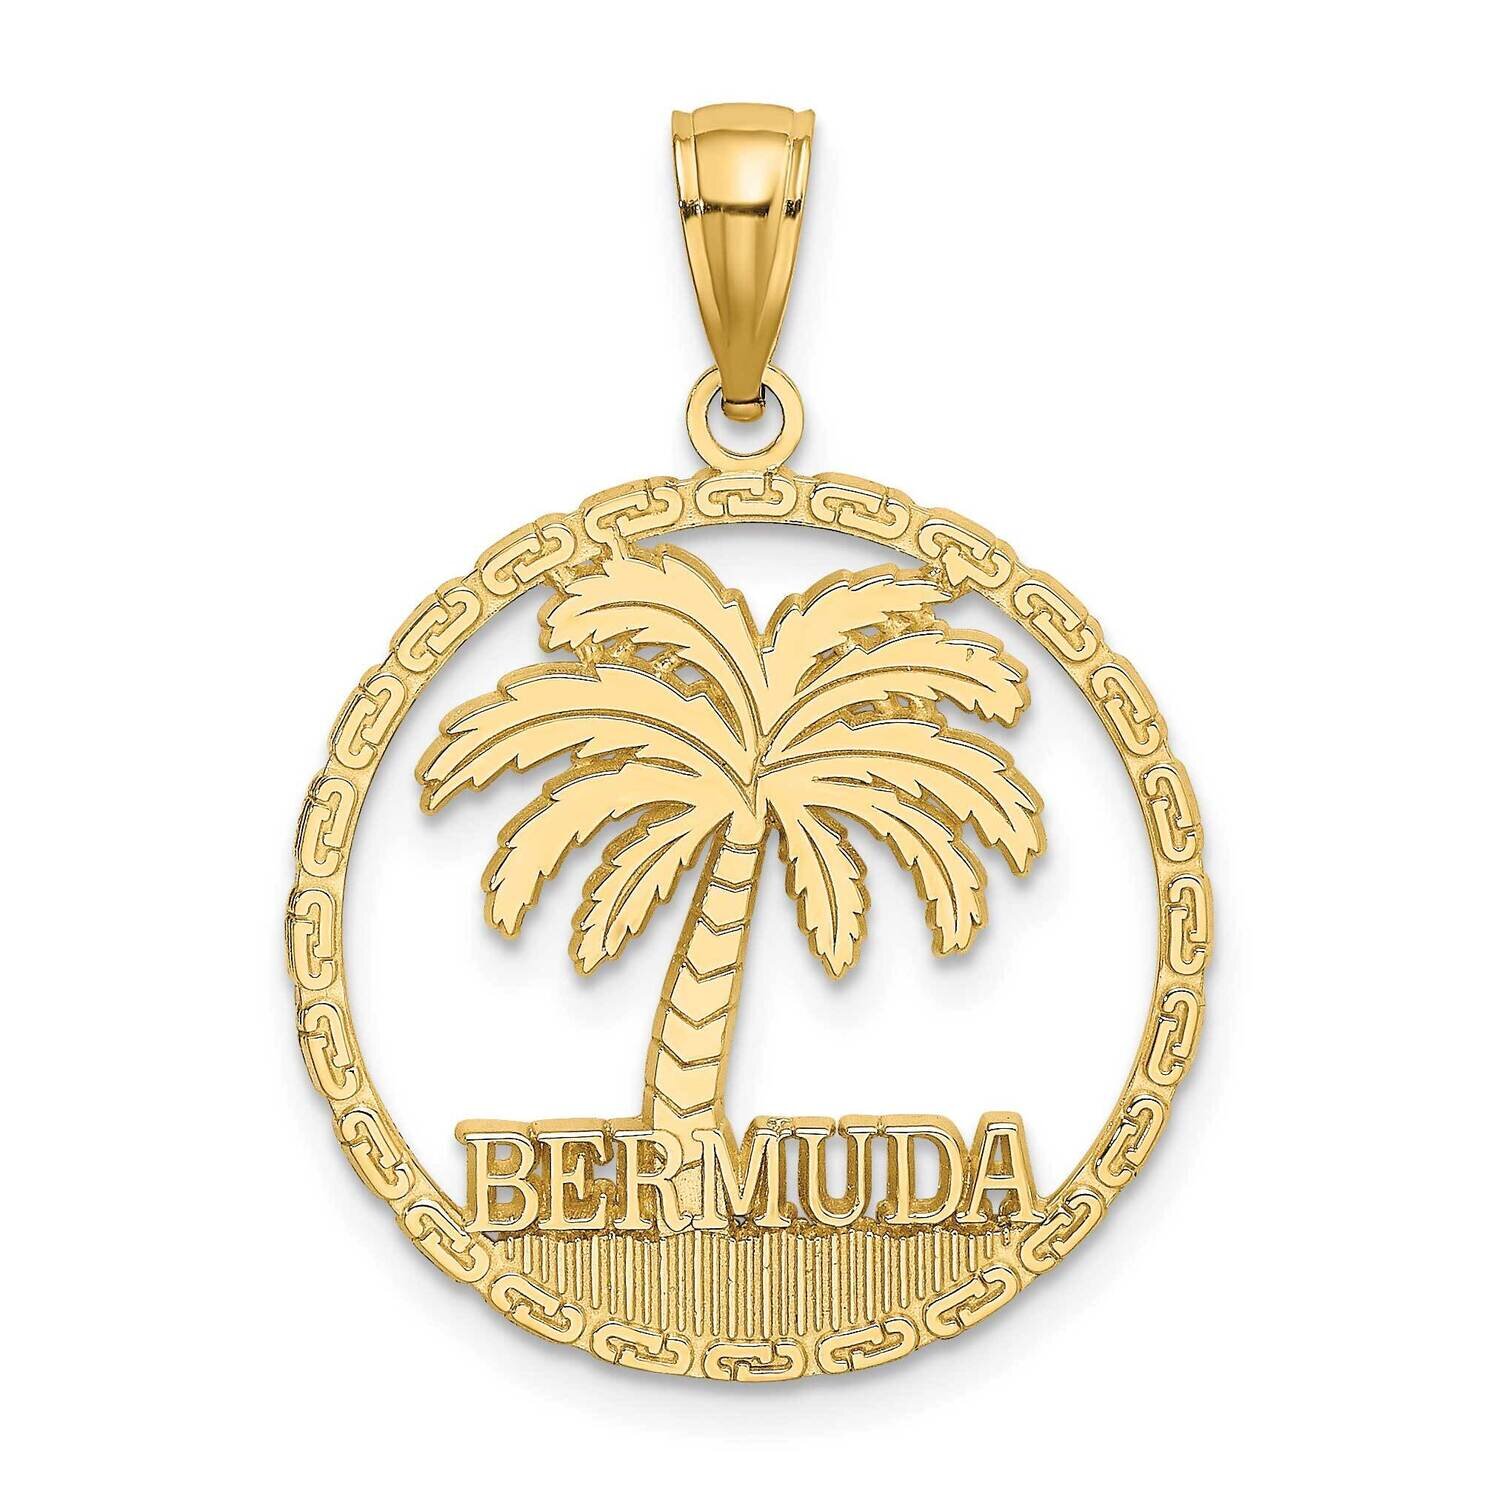 Bermuda Under Palm Tree In Round Frame Charm 14k Gold K7604